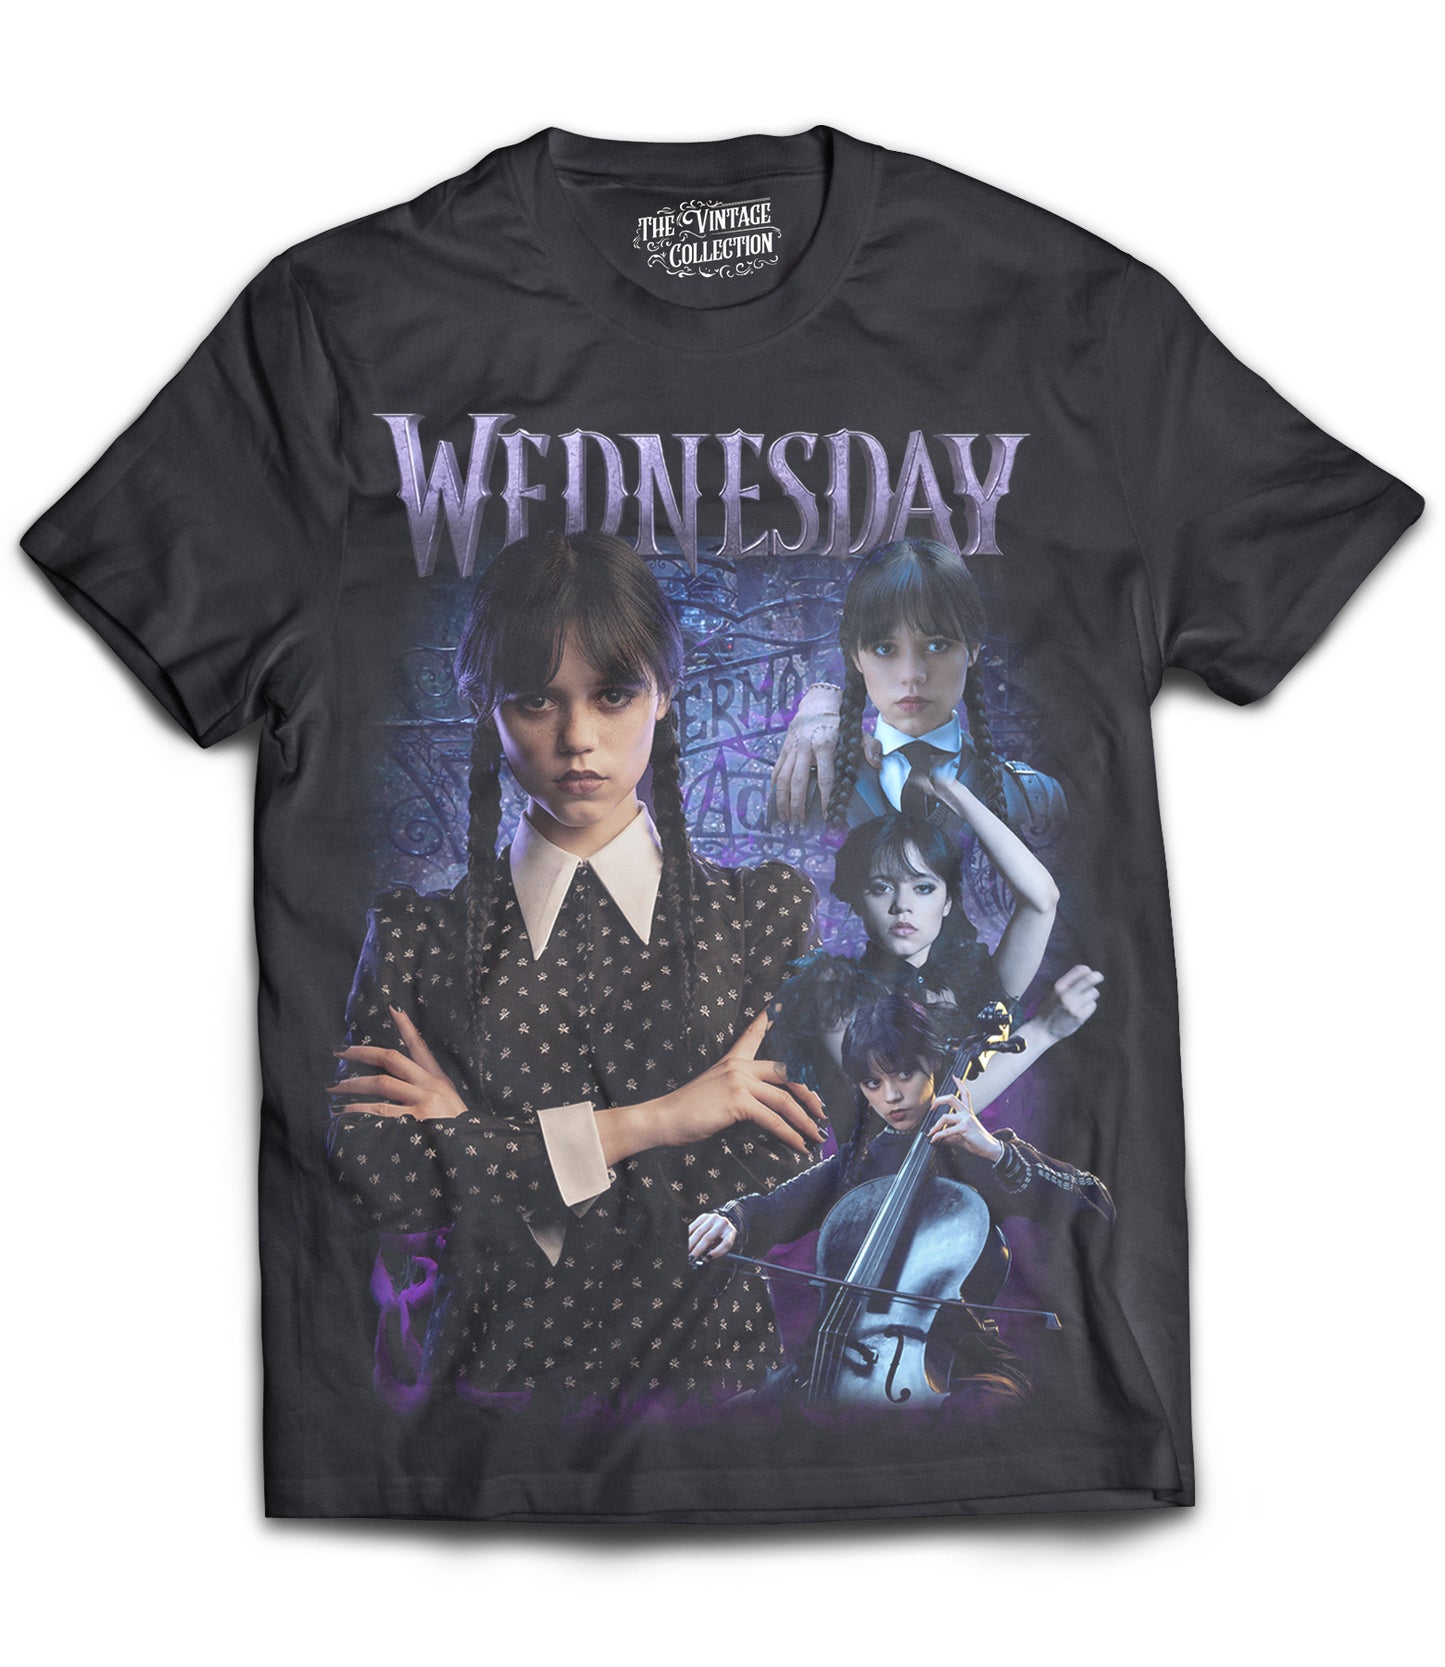 Wednesday Tribute Shirt (Black)